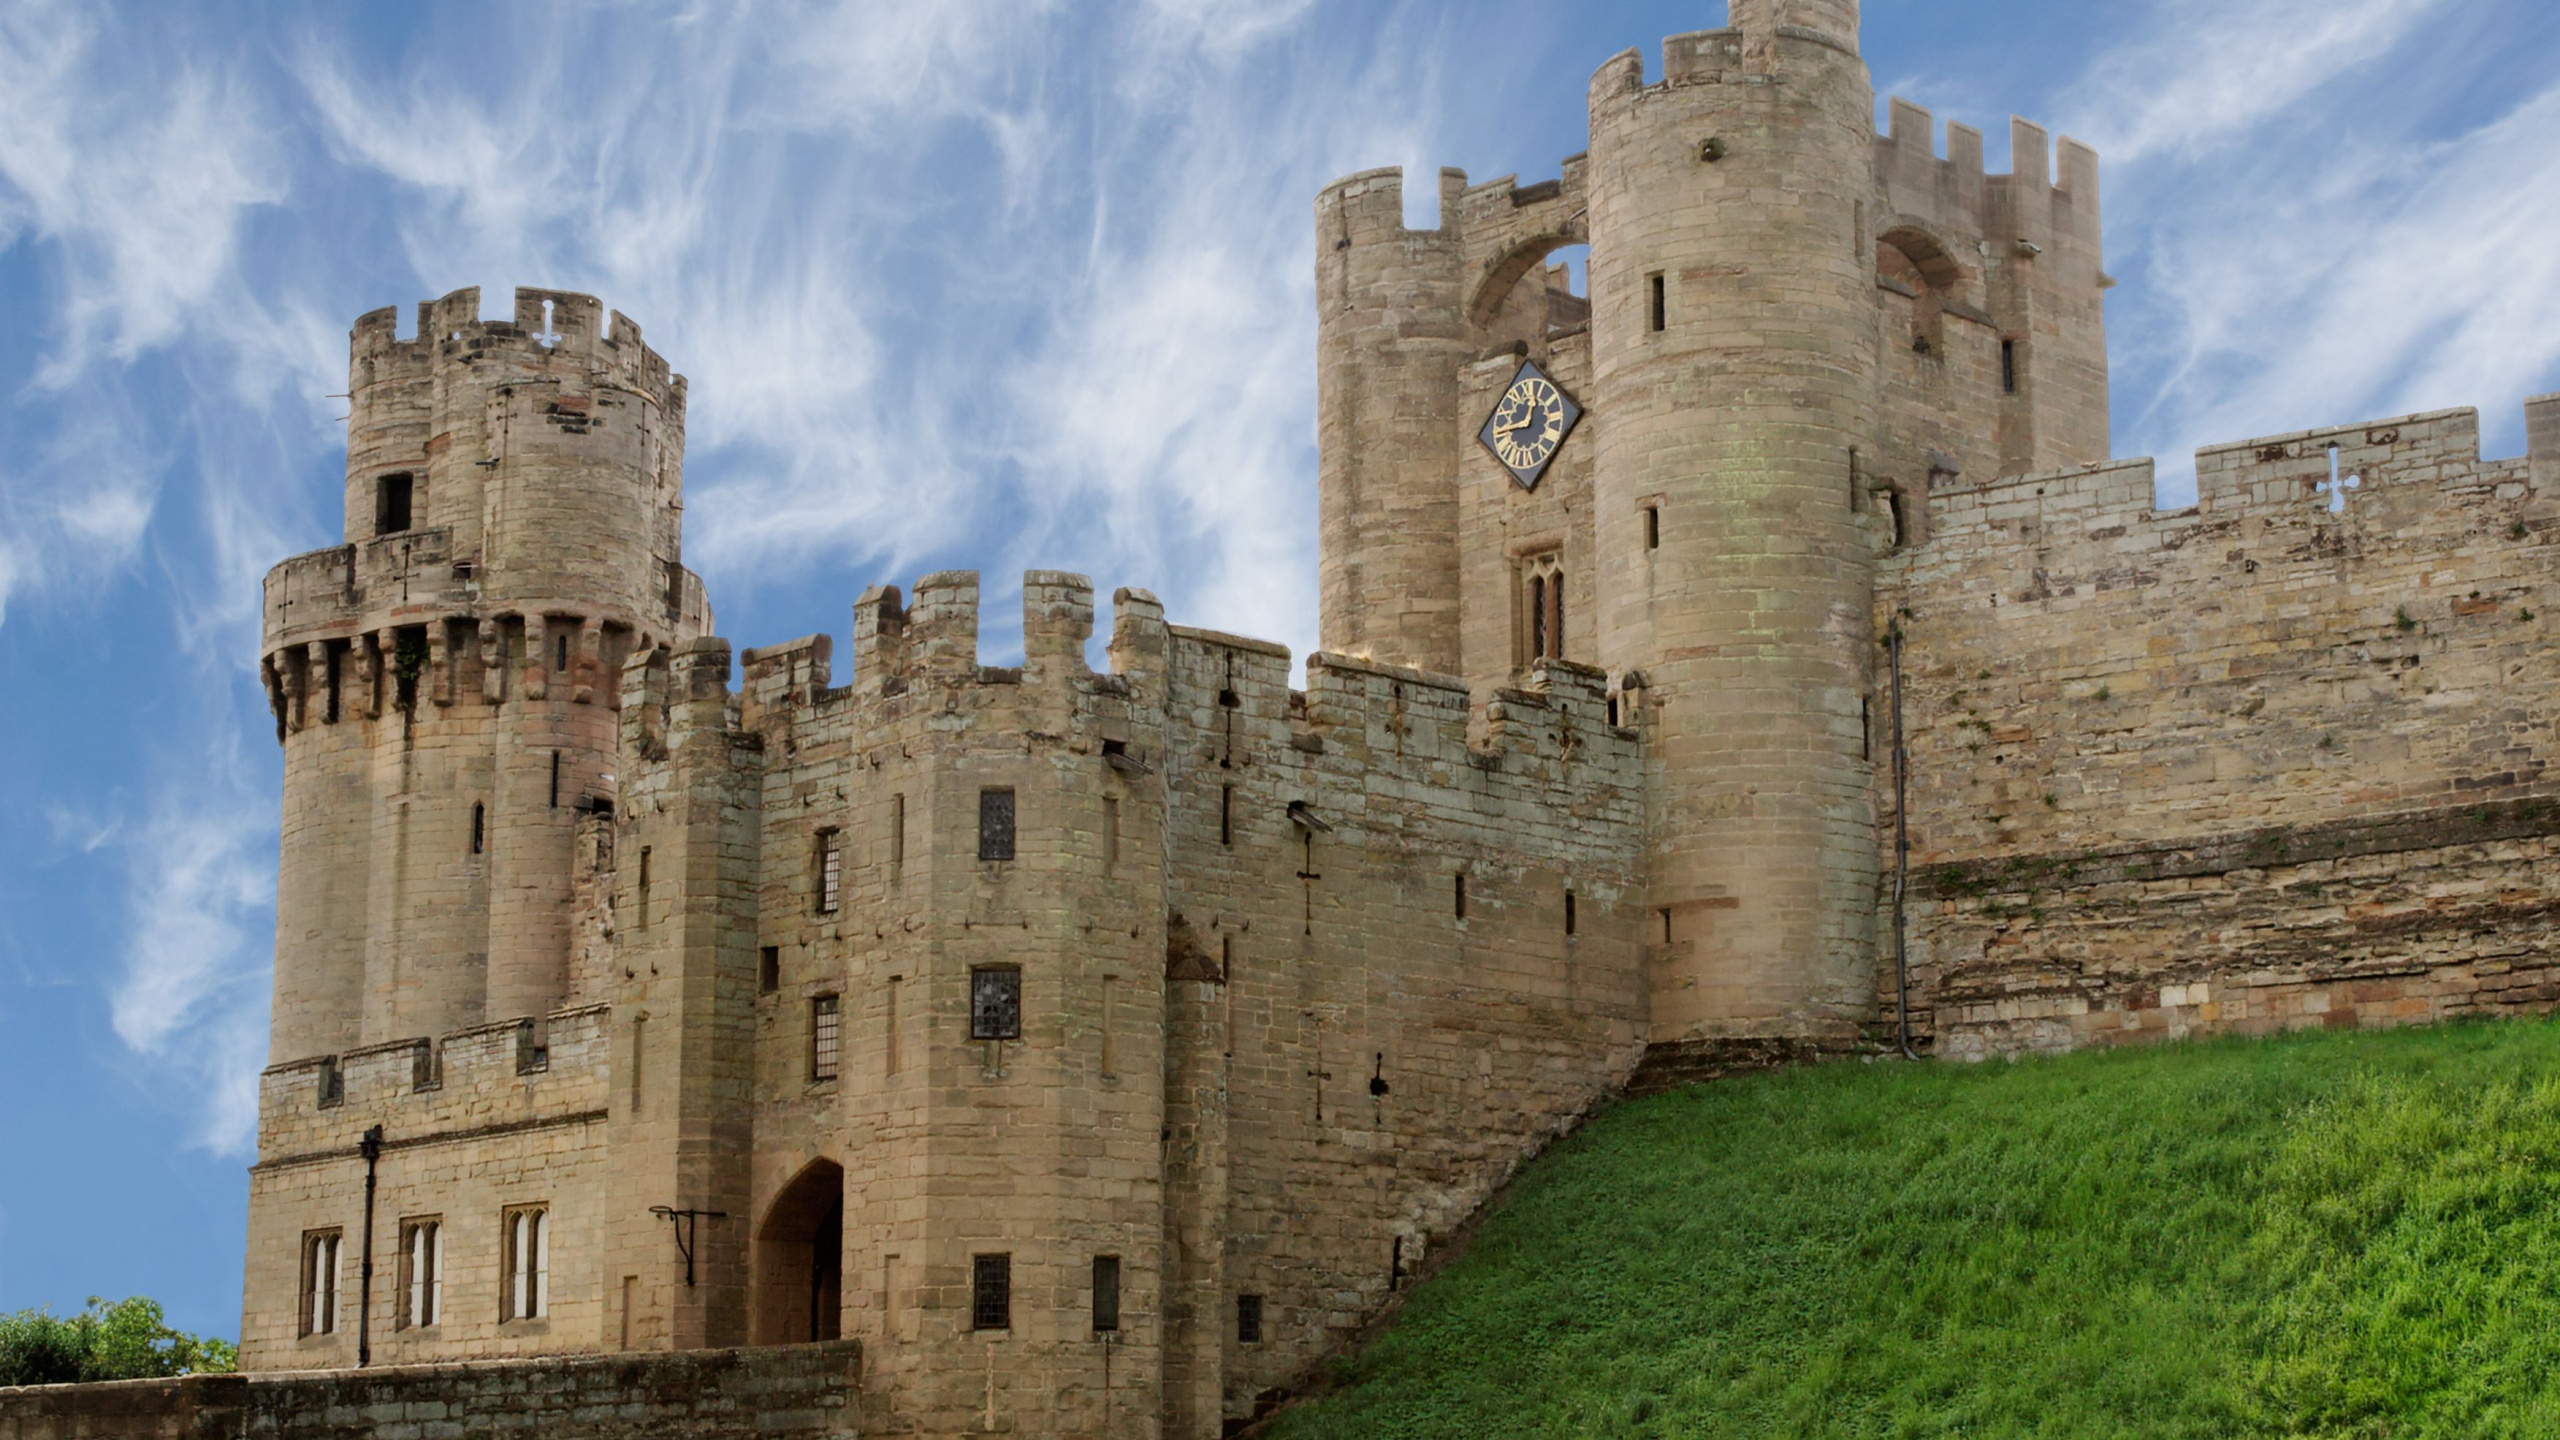 城堡, 中世纪建筑风格, 防御工事, 历史站, 伦敦 壁纸 2560x1440 允许